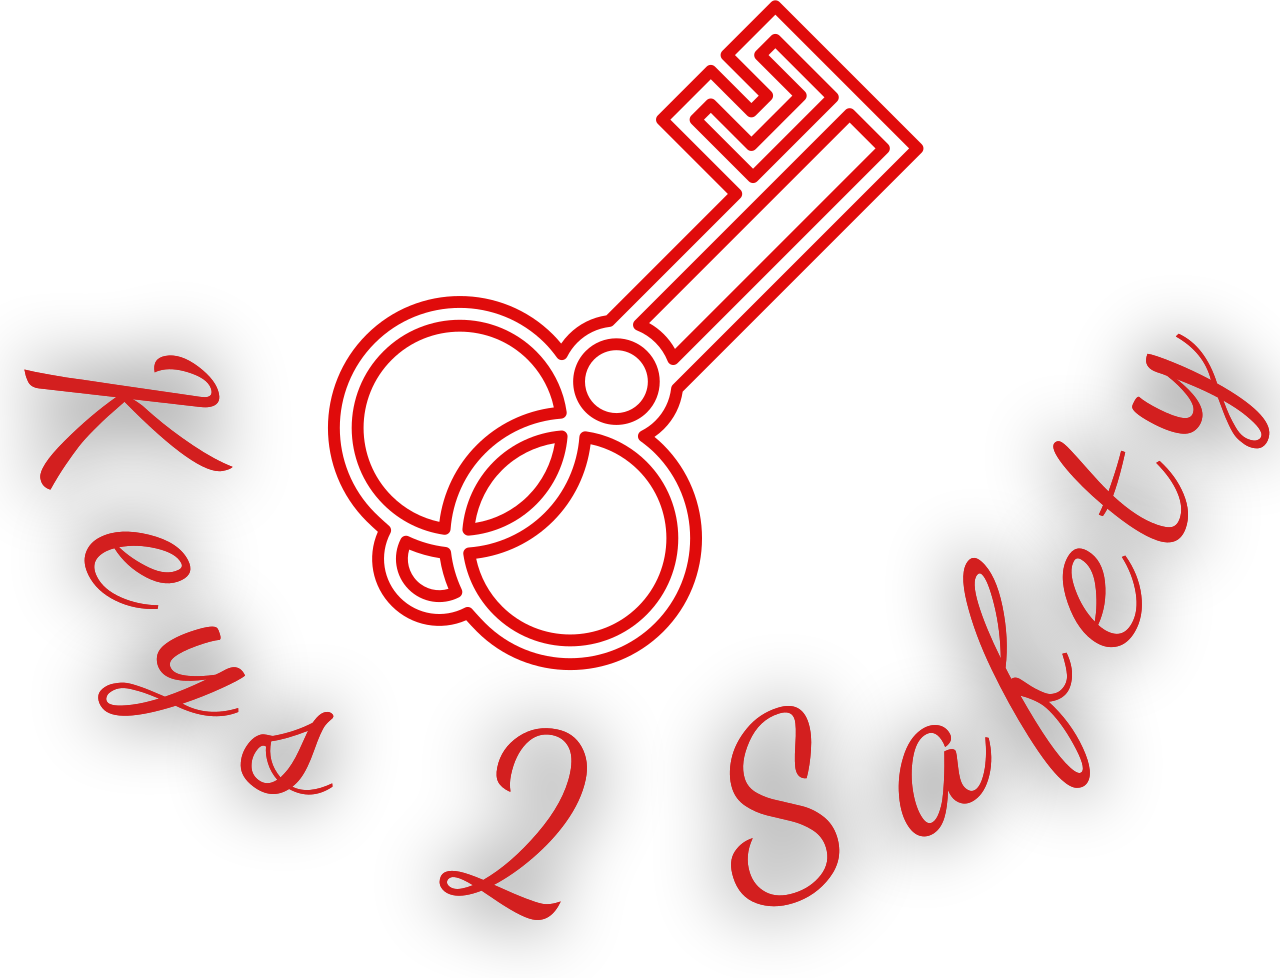 Keys 2 Safety's logo